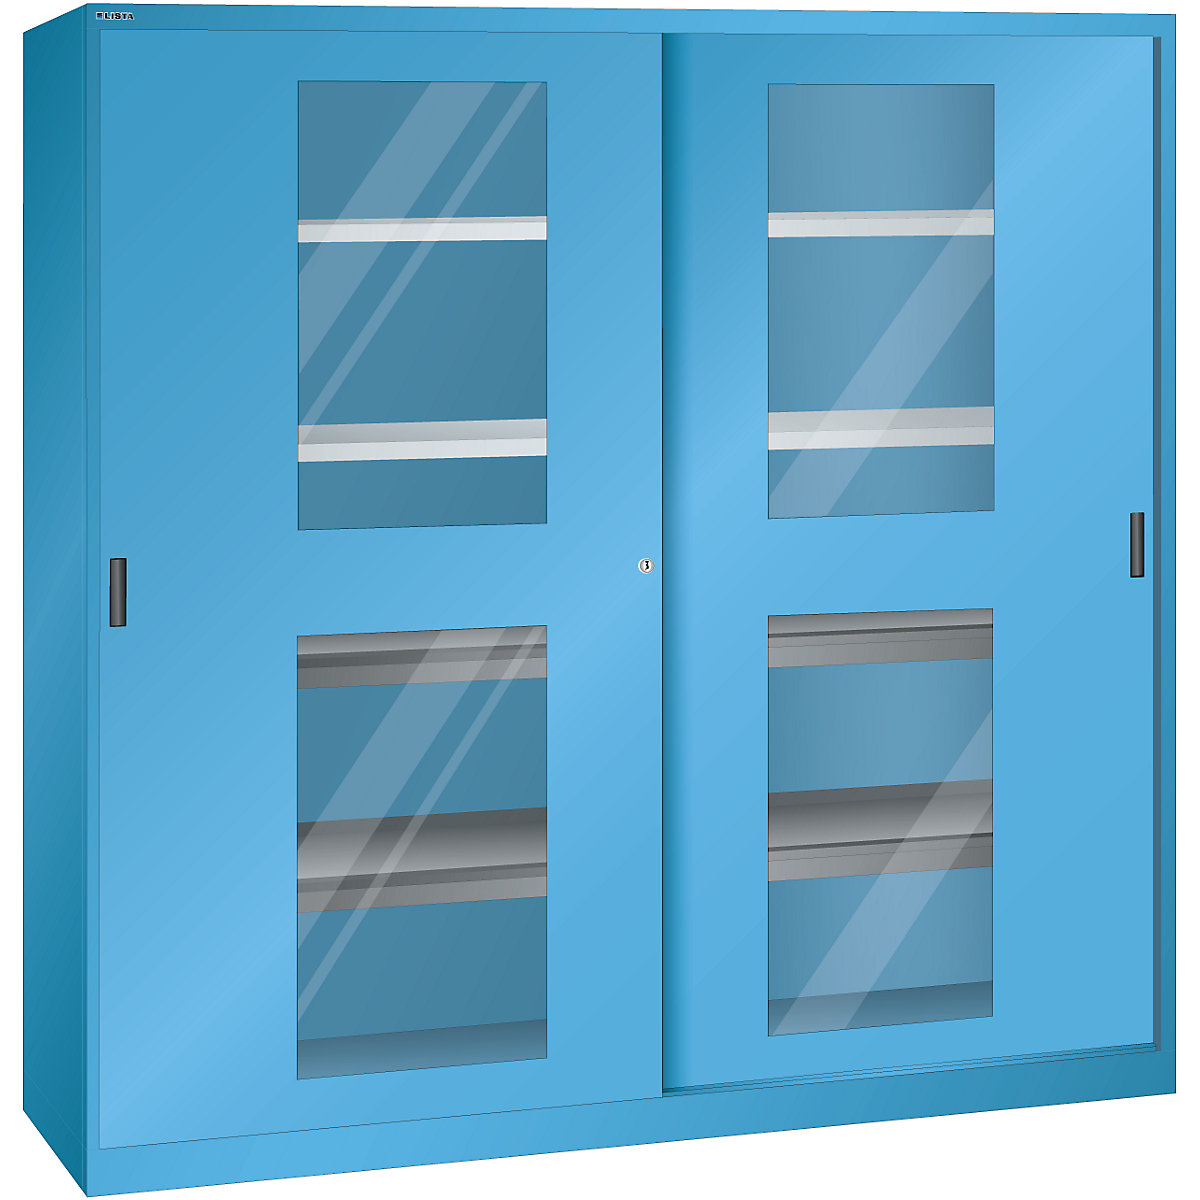 Sliding door cupboard with vision panel doors - LISTA